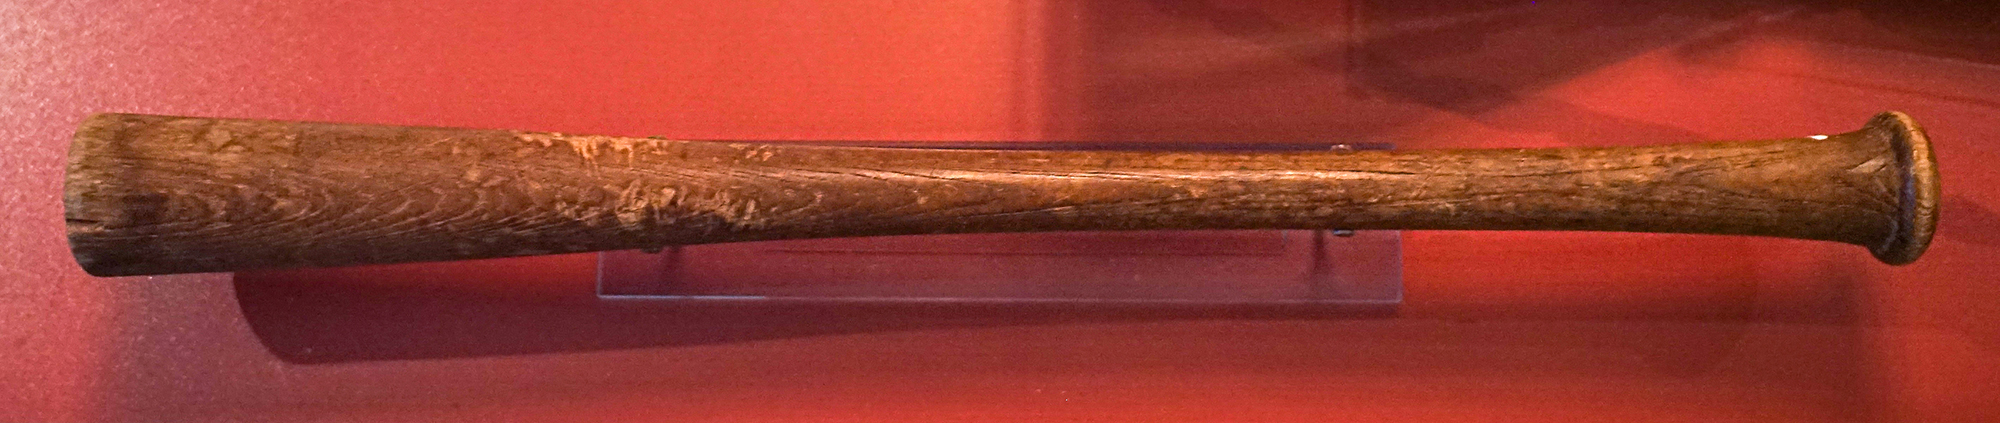 a wooden baseball bat